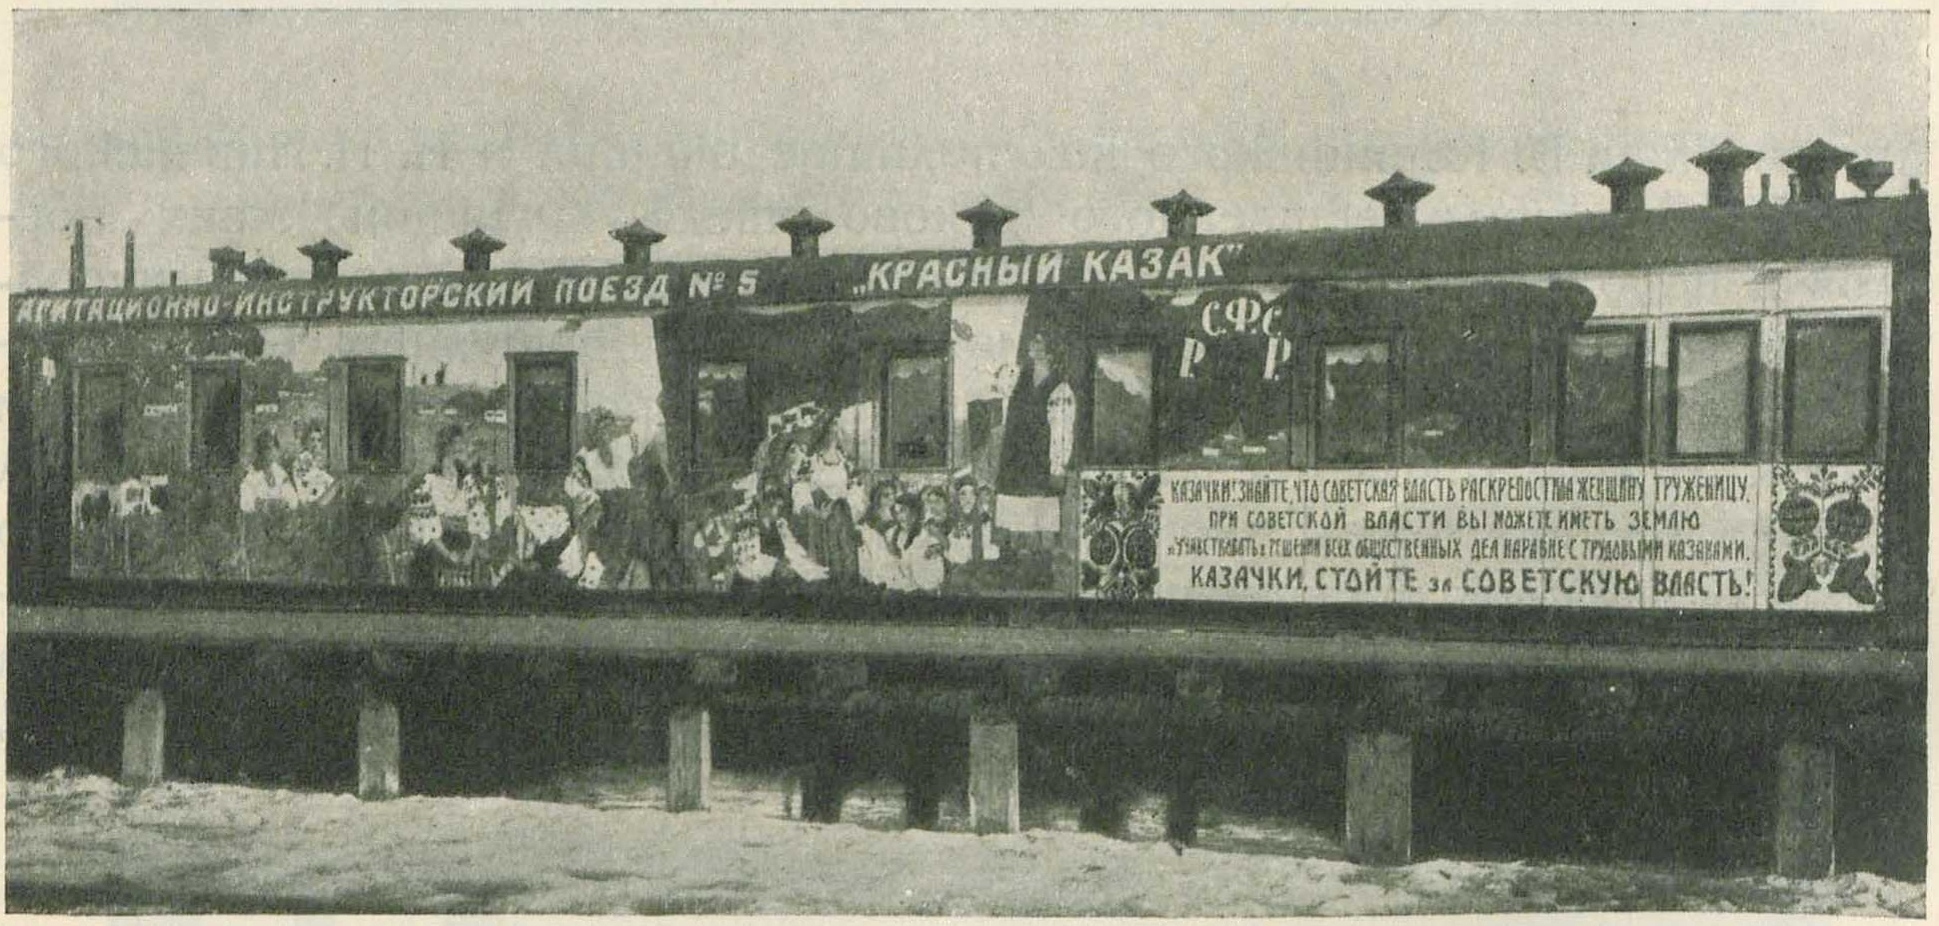  Уникальный вид революционного советского плаката — плакат передвижной, плакат-поезд